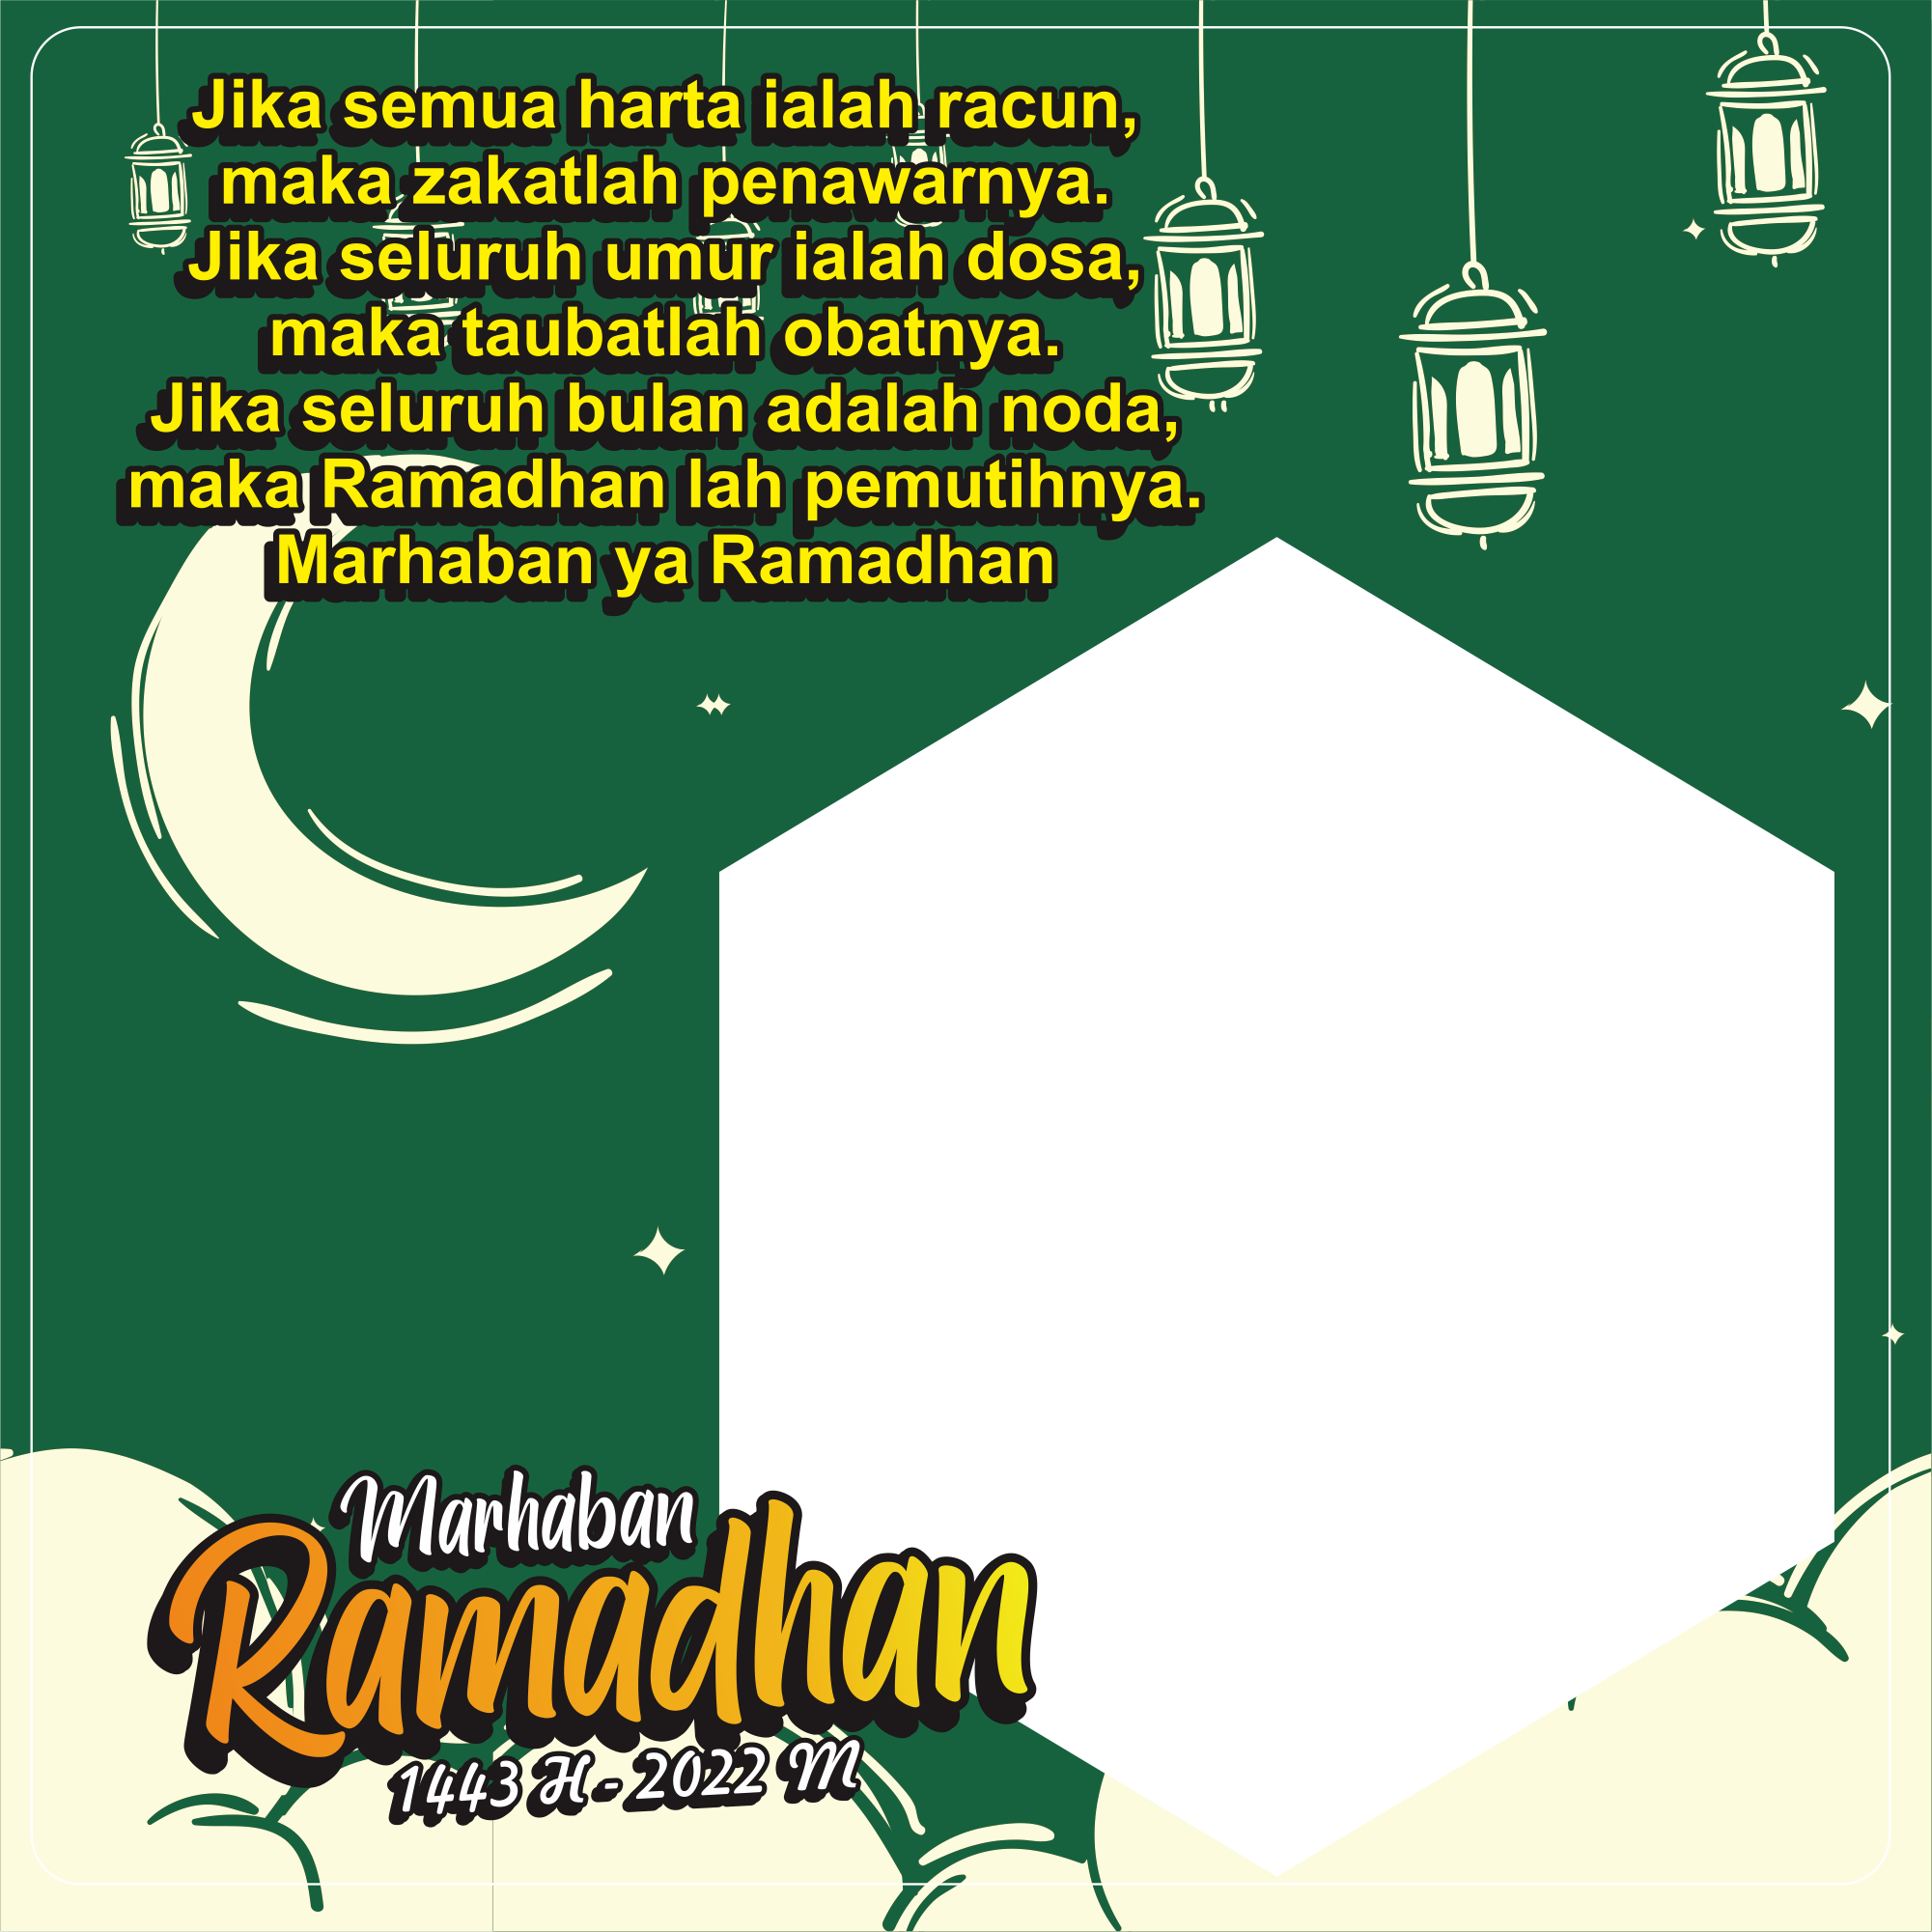 Gambar ramadhan 1443 H